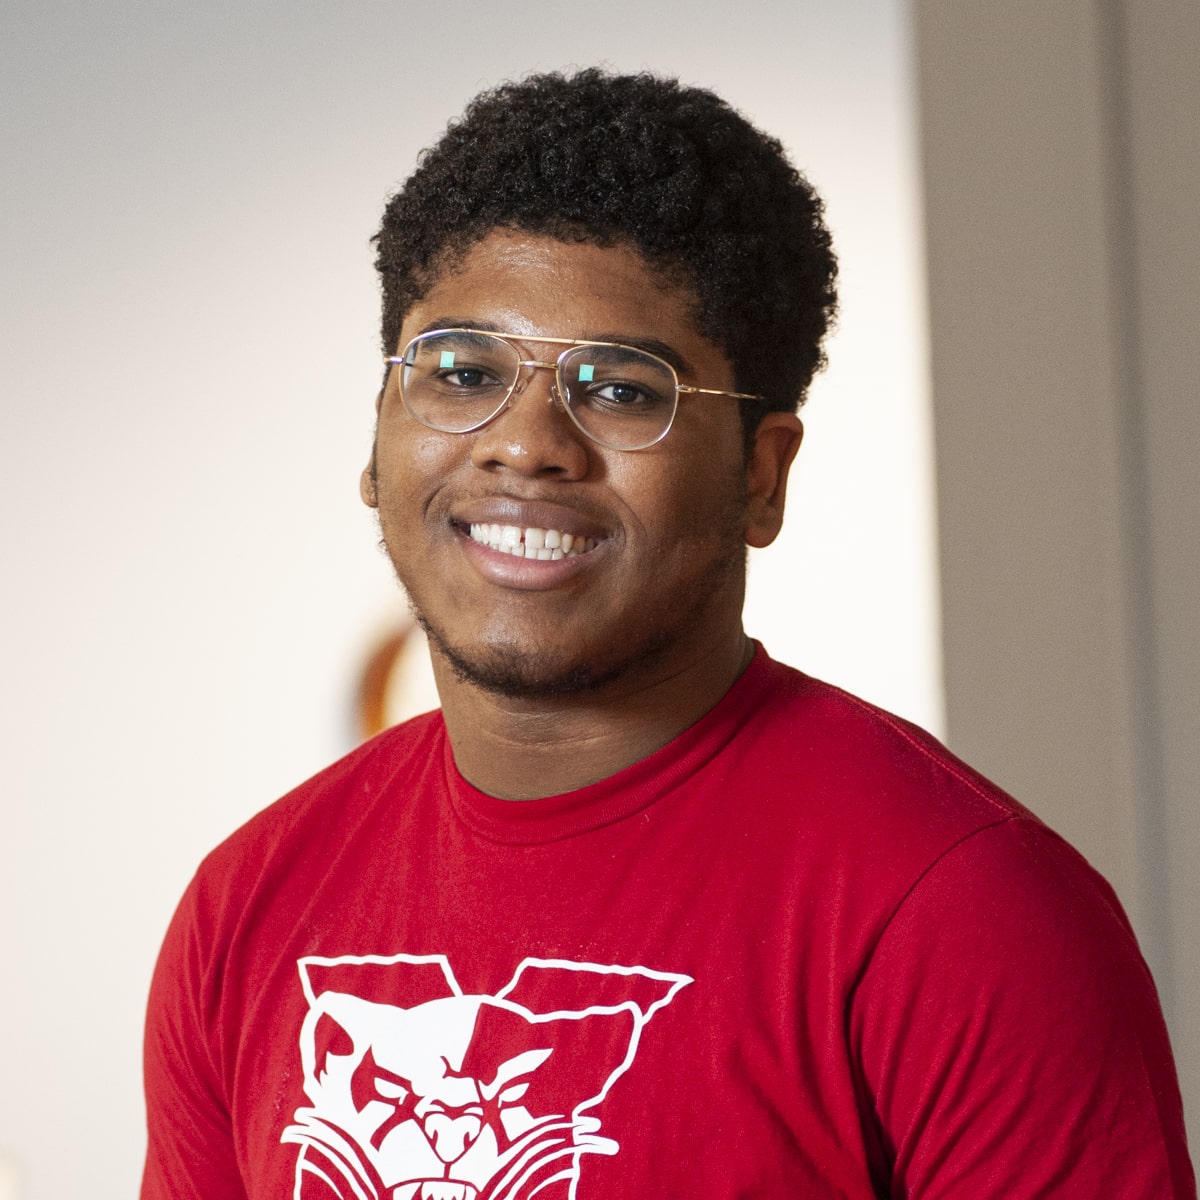 Student wearing SXU shirt smiling